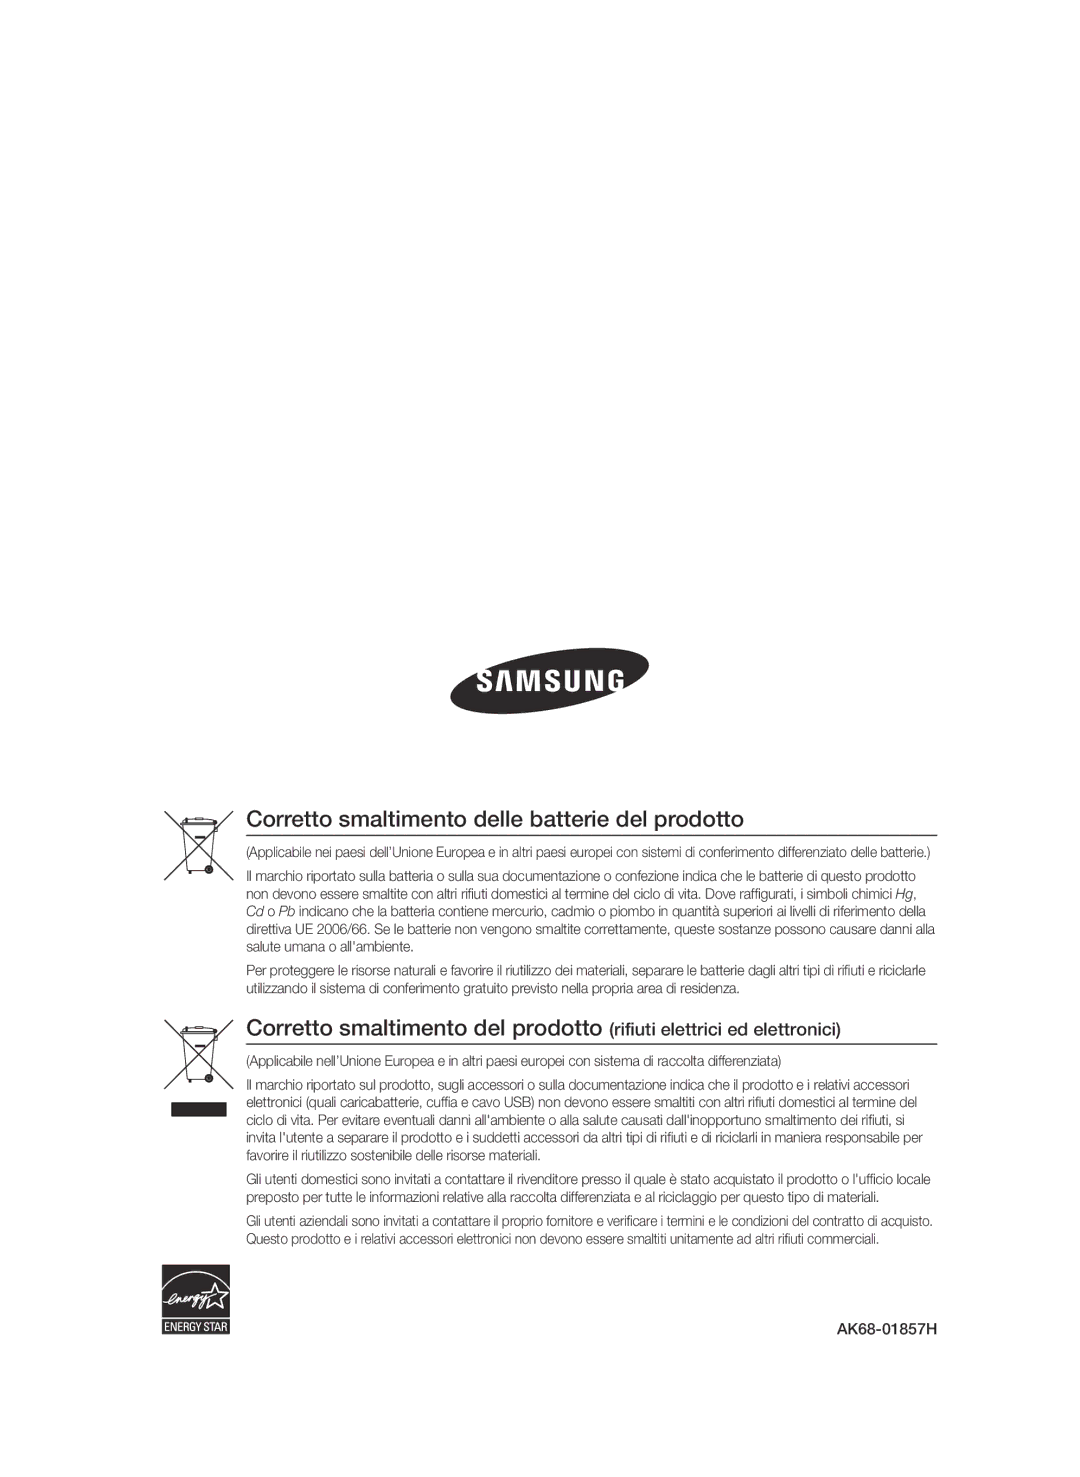 Samsung BD-C7500/EDC, BD-C7500/XEF manual Corretto smaltimento delle batterie del prodotto 